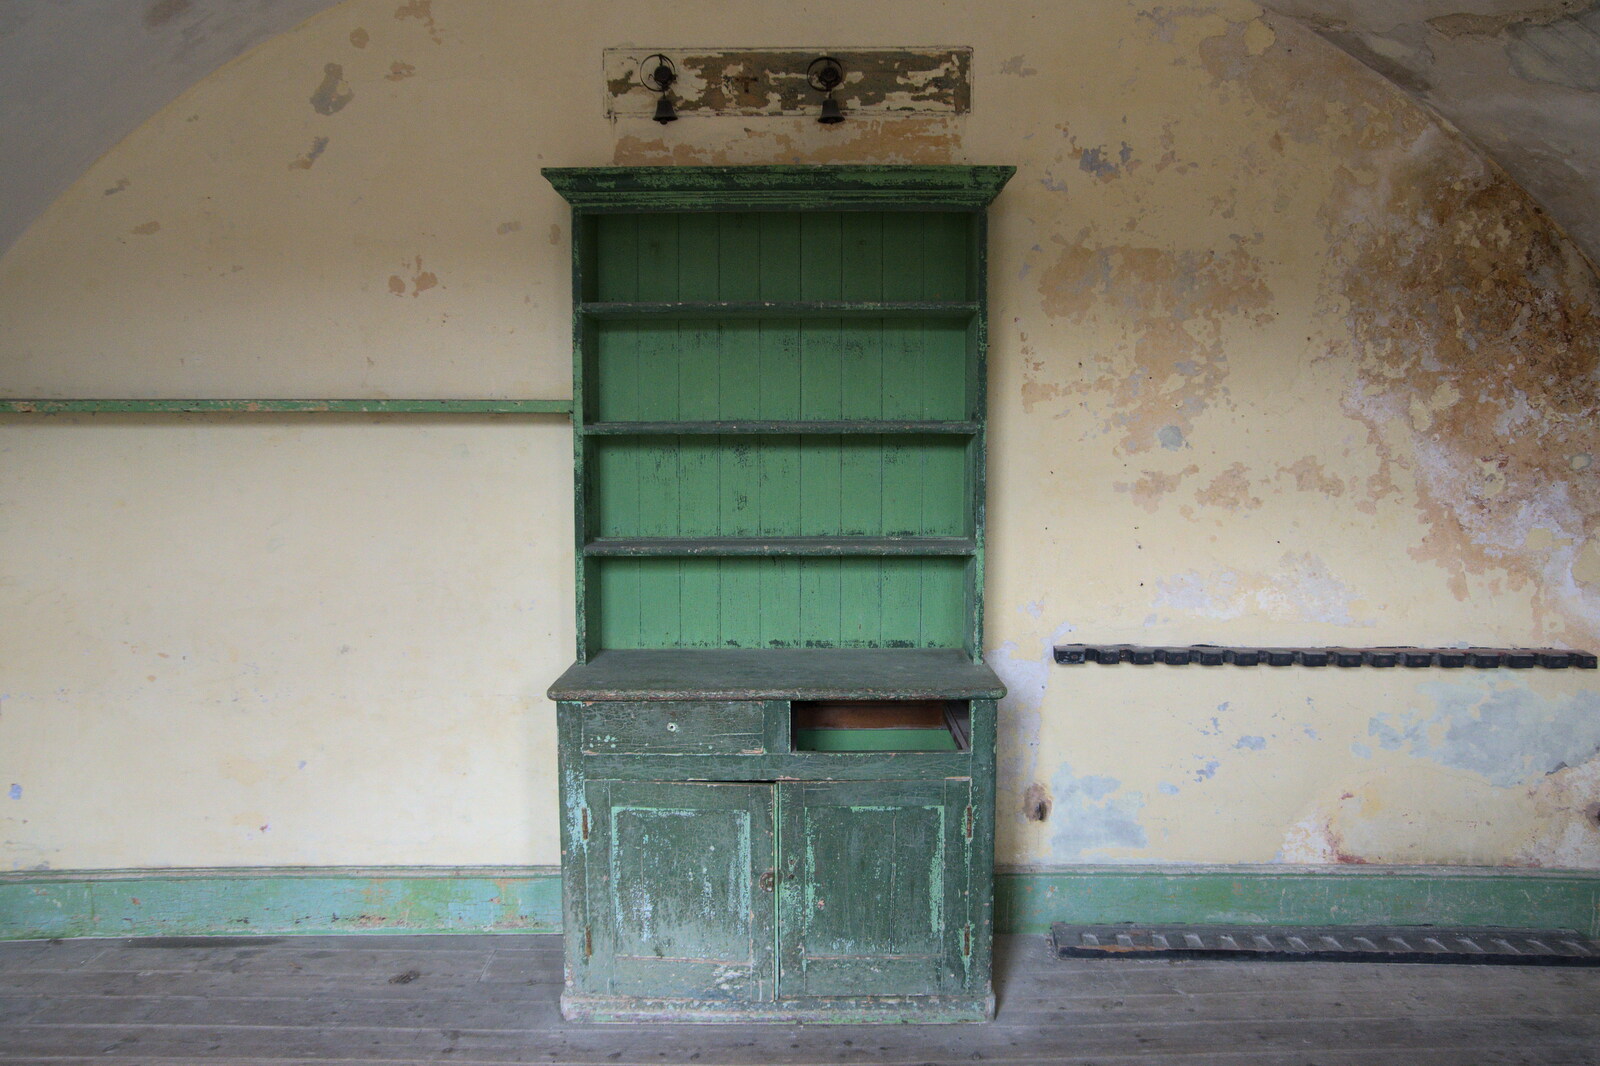 A green Welsh Dresser from A Trip to Landguard Fort, Felixstowe, Suffolk - 16th October 2022